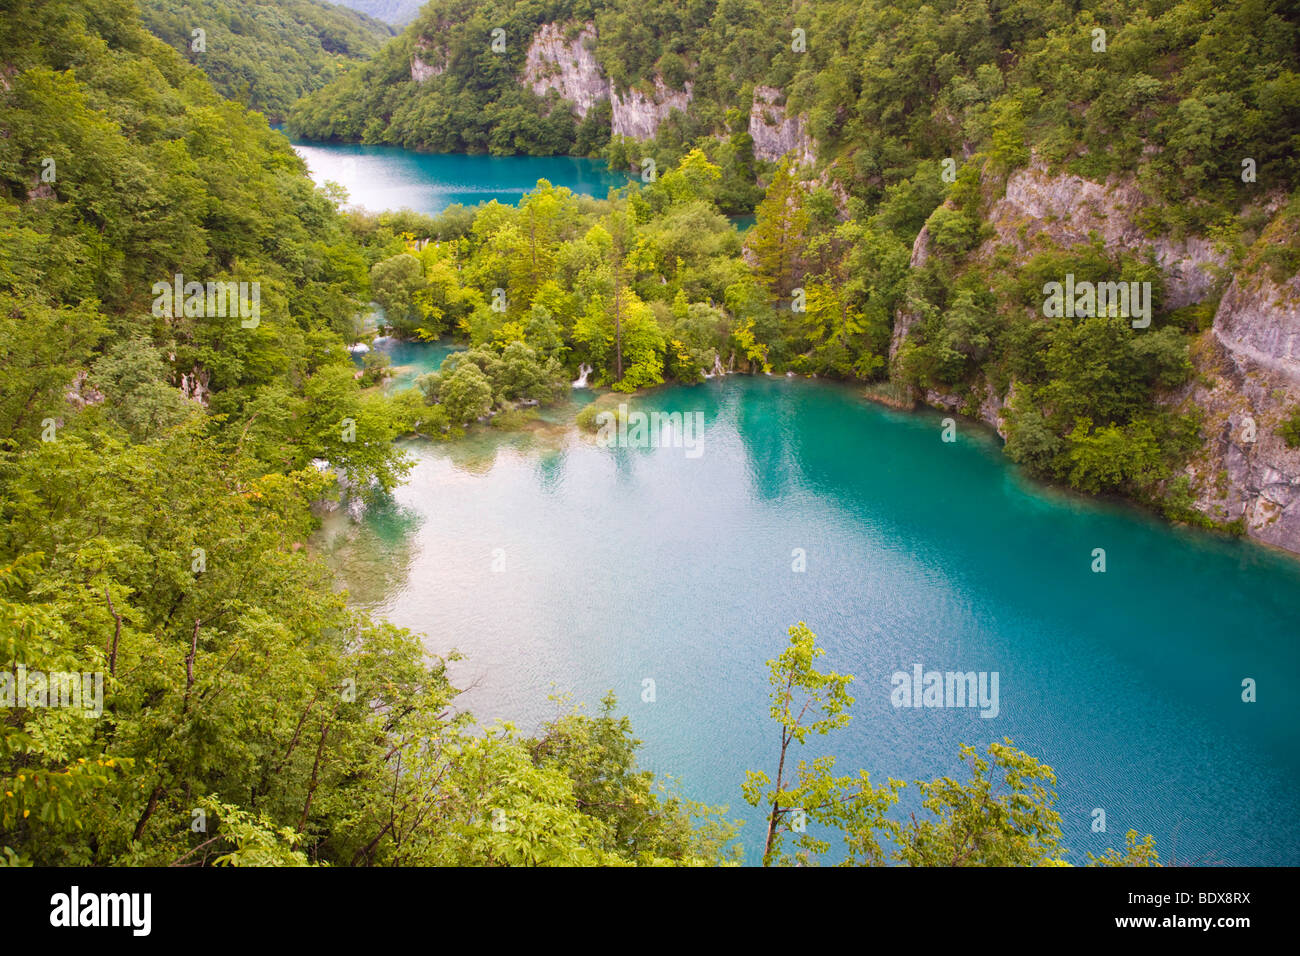 Plitvicka Jezera, le parc national des Lacs de Plitvice, Croatie, Europe, Lika-Senj Banque D'Images